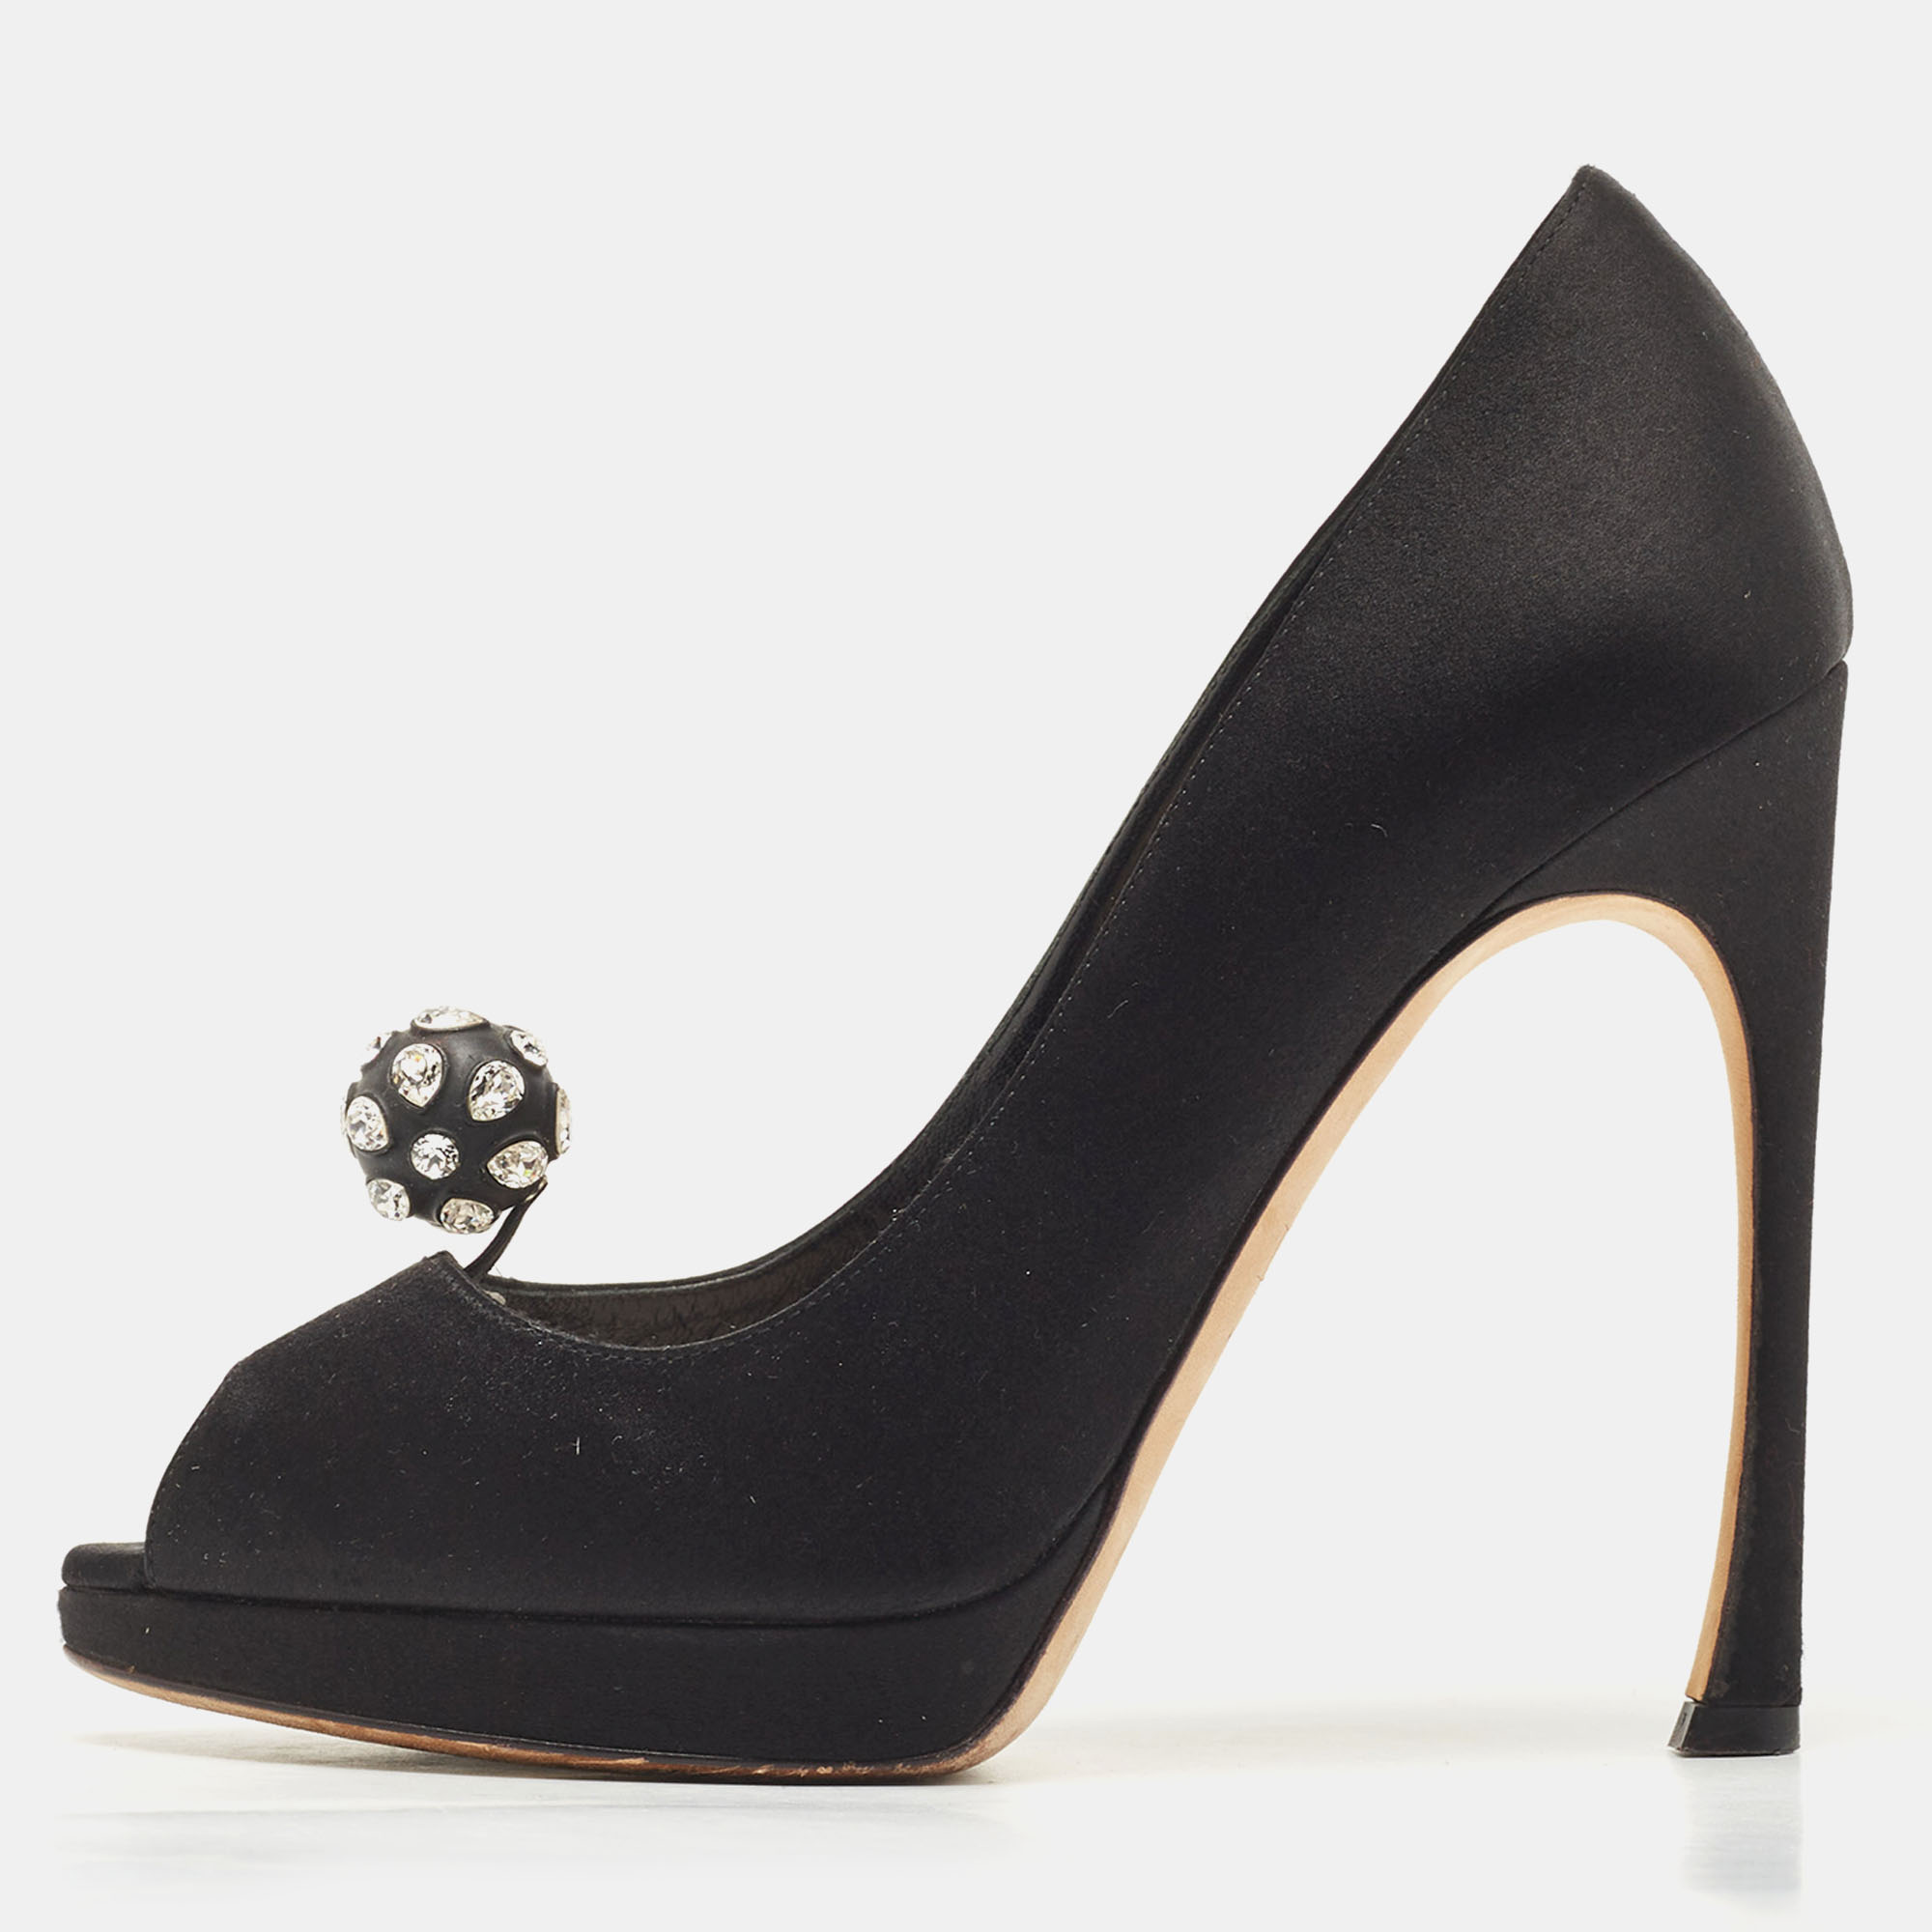 Pre-owned Dior Black Satin Crystal Embellished Peep Toe Pumps Size 39